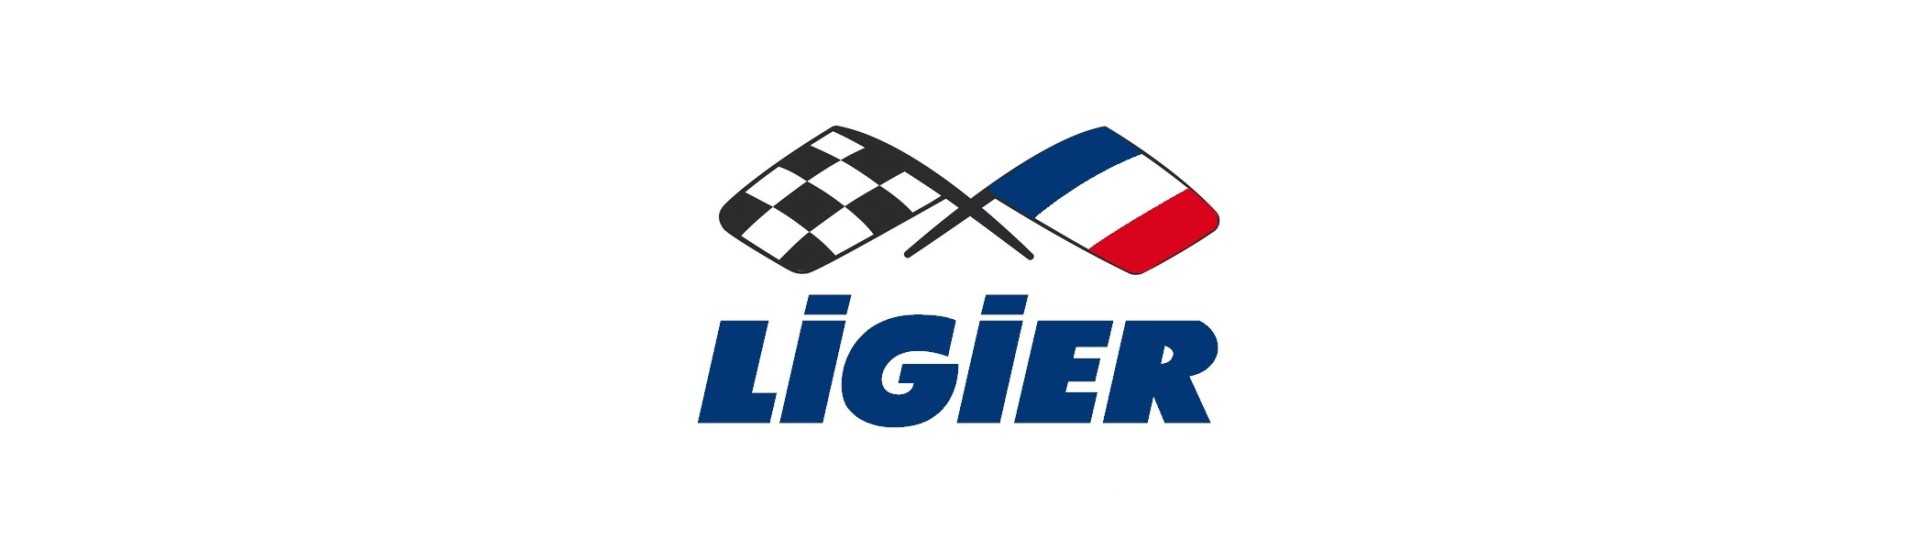 Cesta de roda sobressalente ao melhor preço para um carro sem licença Ligier